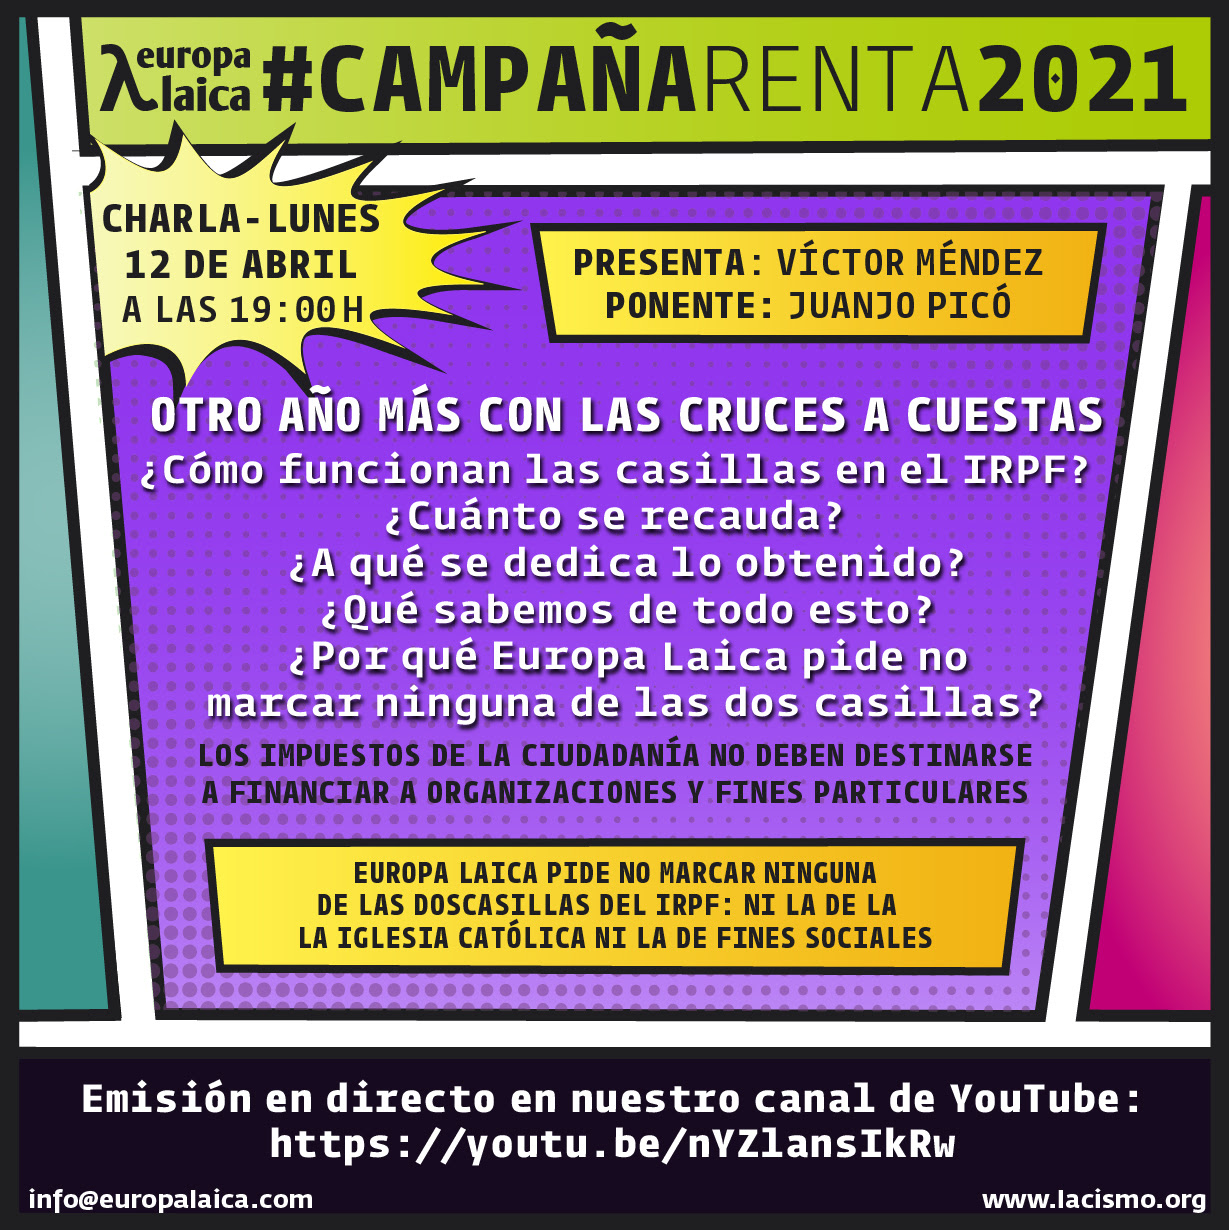 2021-charla-EL-CAMPAÑA-RENTA-IRPF-cartel-1